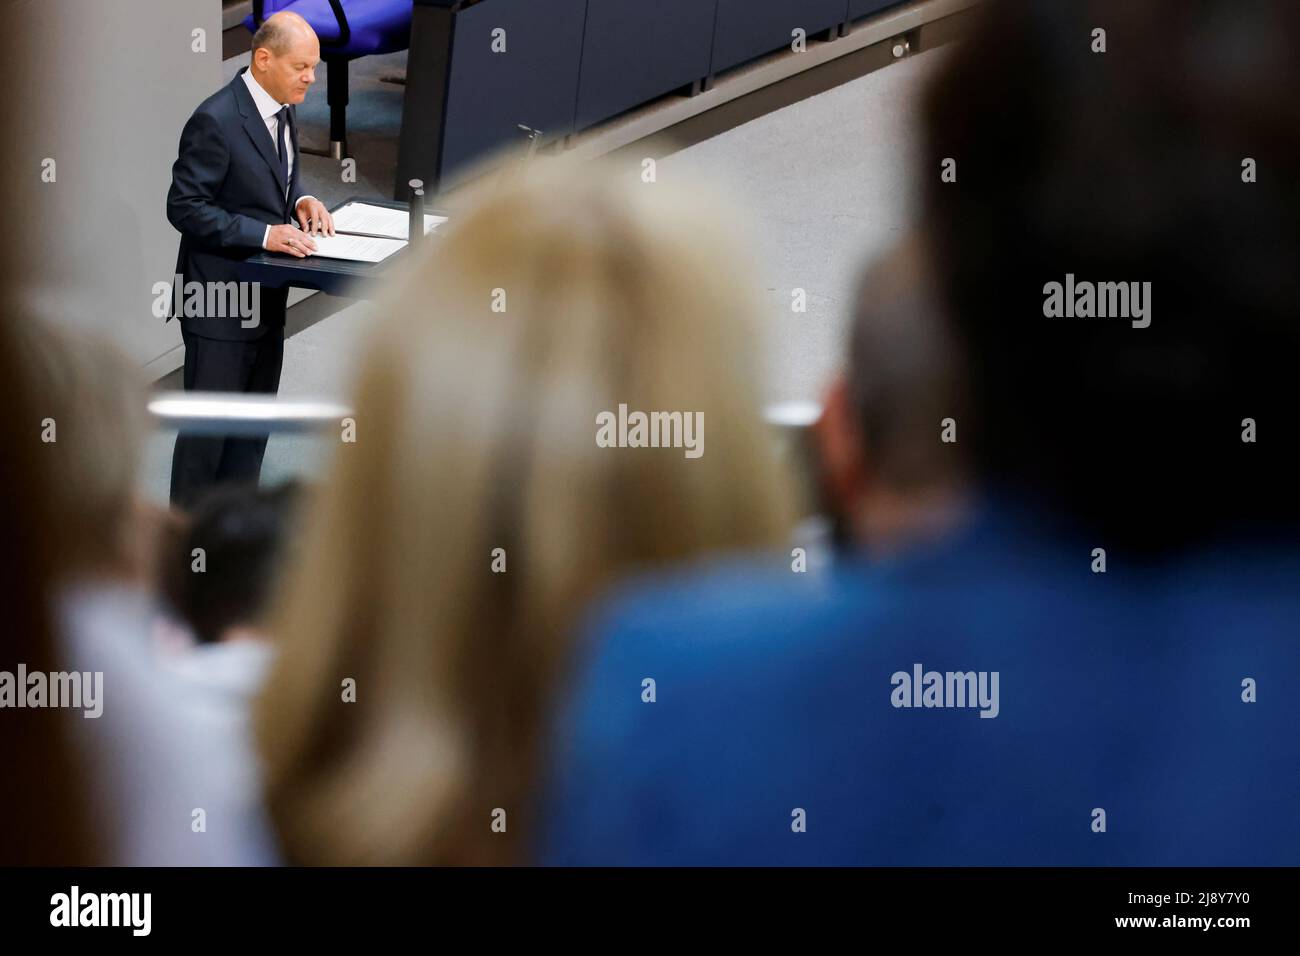 El Canciller alemán Olaf Scholz habla durante una sesión de la Cámara Baja del parlamento de Alemania, el Bundestag, en Berlín, Alemania, el 19 de mayo, 2022. REUTERS/Hannibal Hanschke Foto de stock